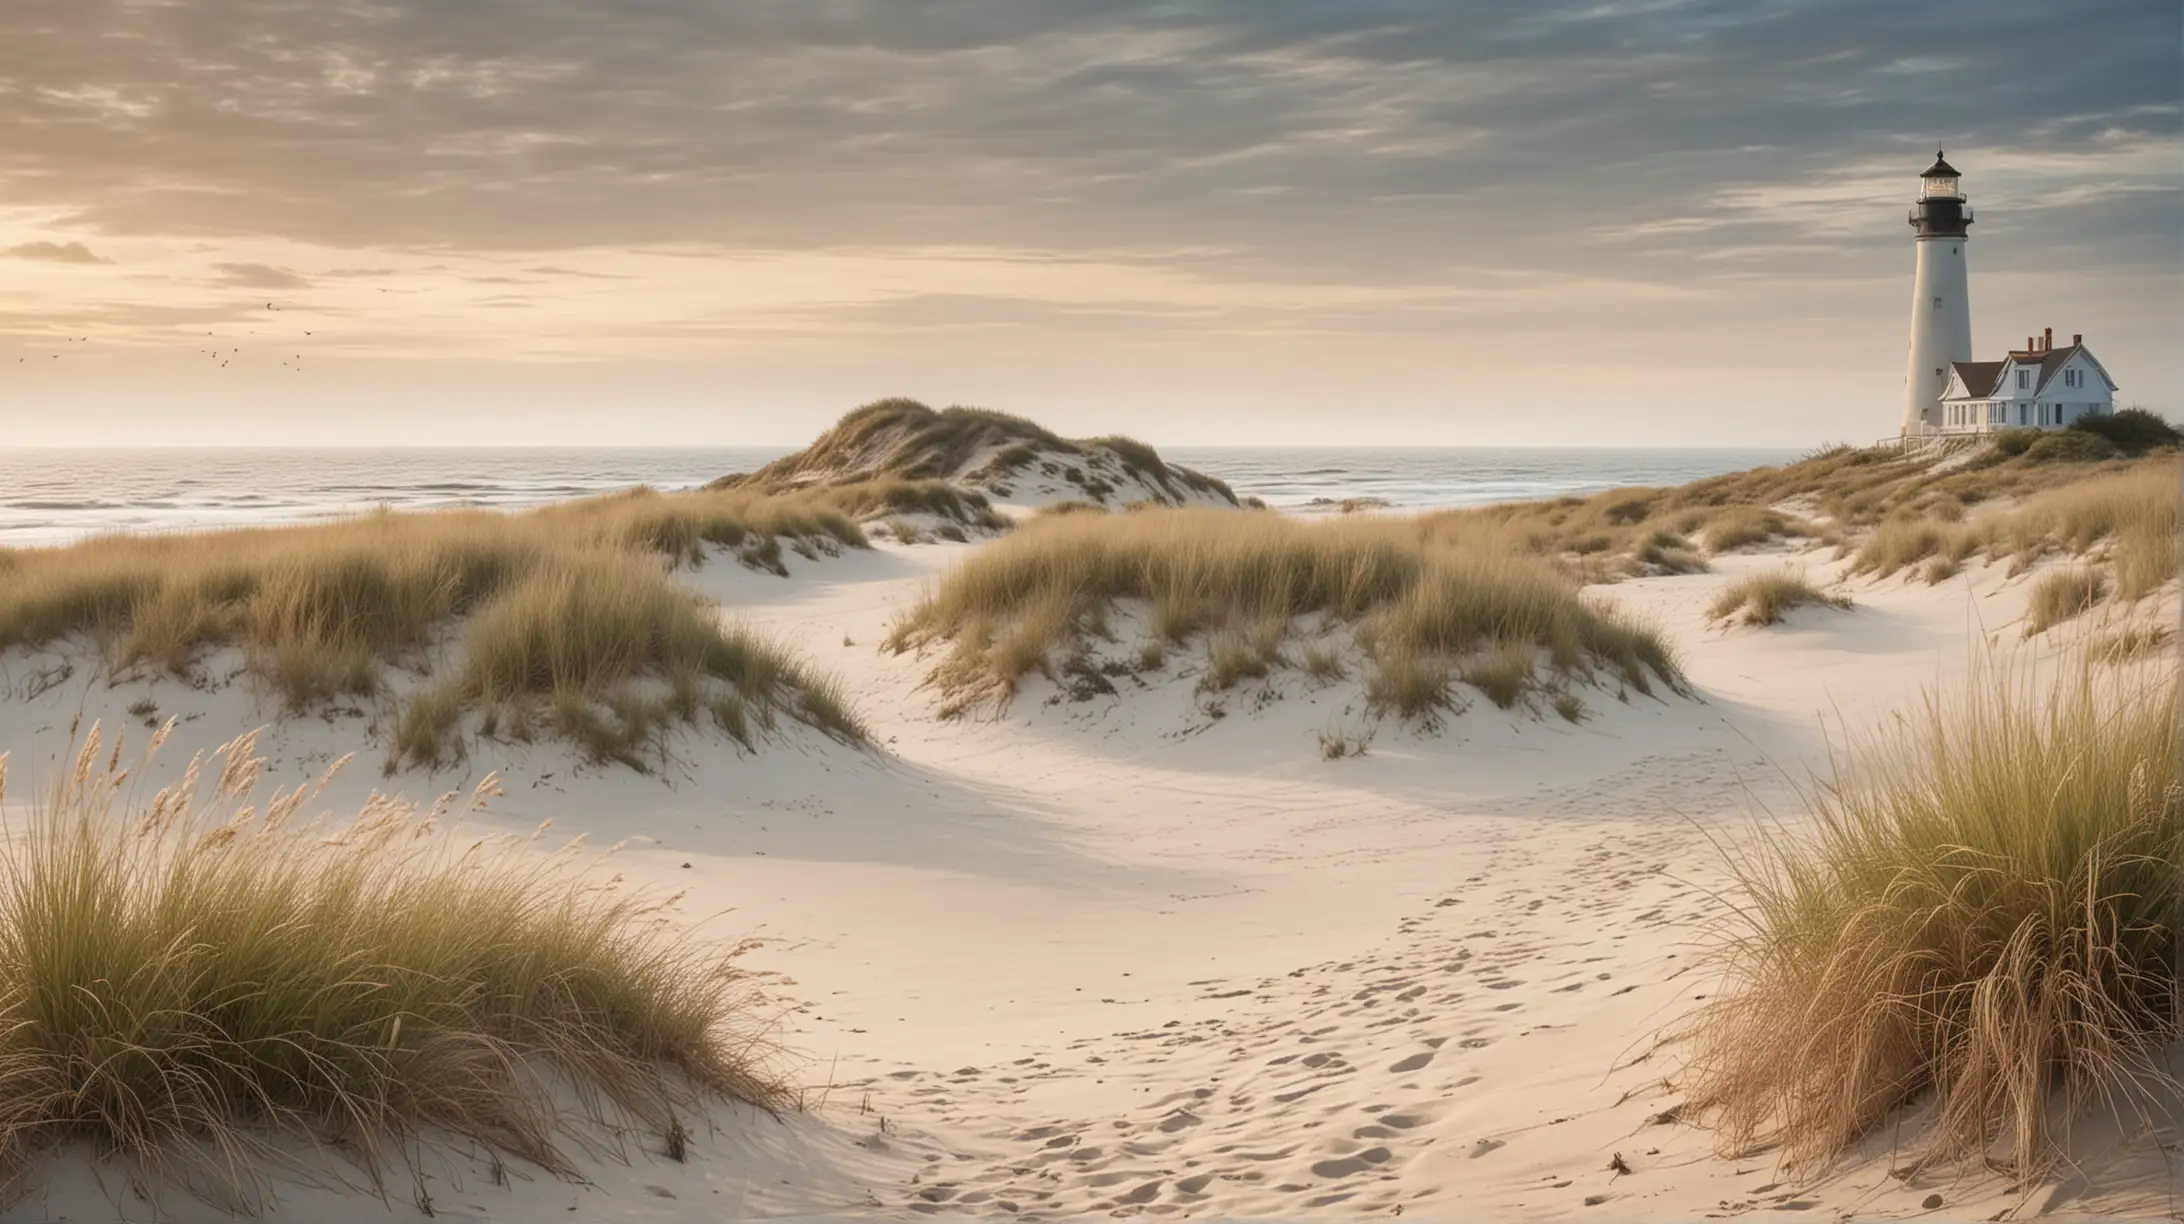 Tranquil Coastal Scene Windswept Sand Dunes and Lighthouse on Misty Horizon